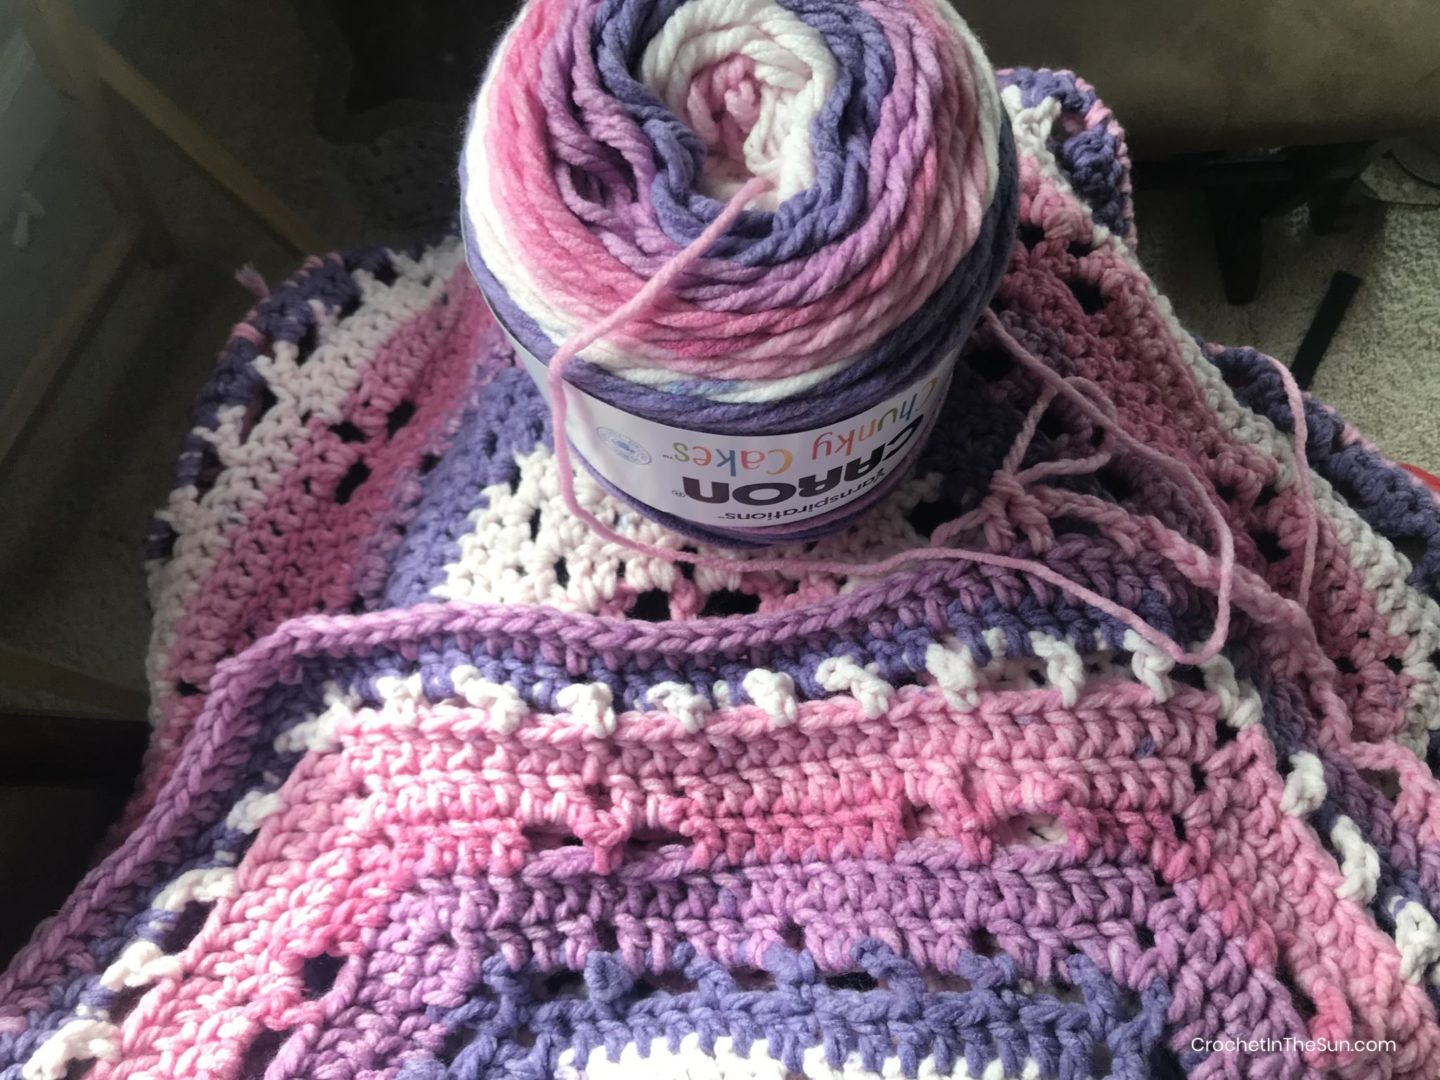 Crochet blanket pattern - free pattern! Colorful, beginner friendly,  beautiful!